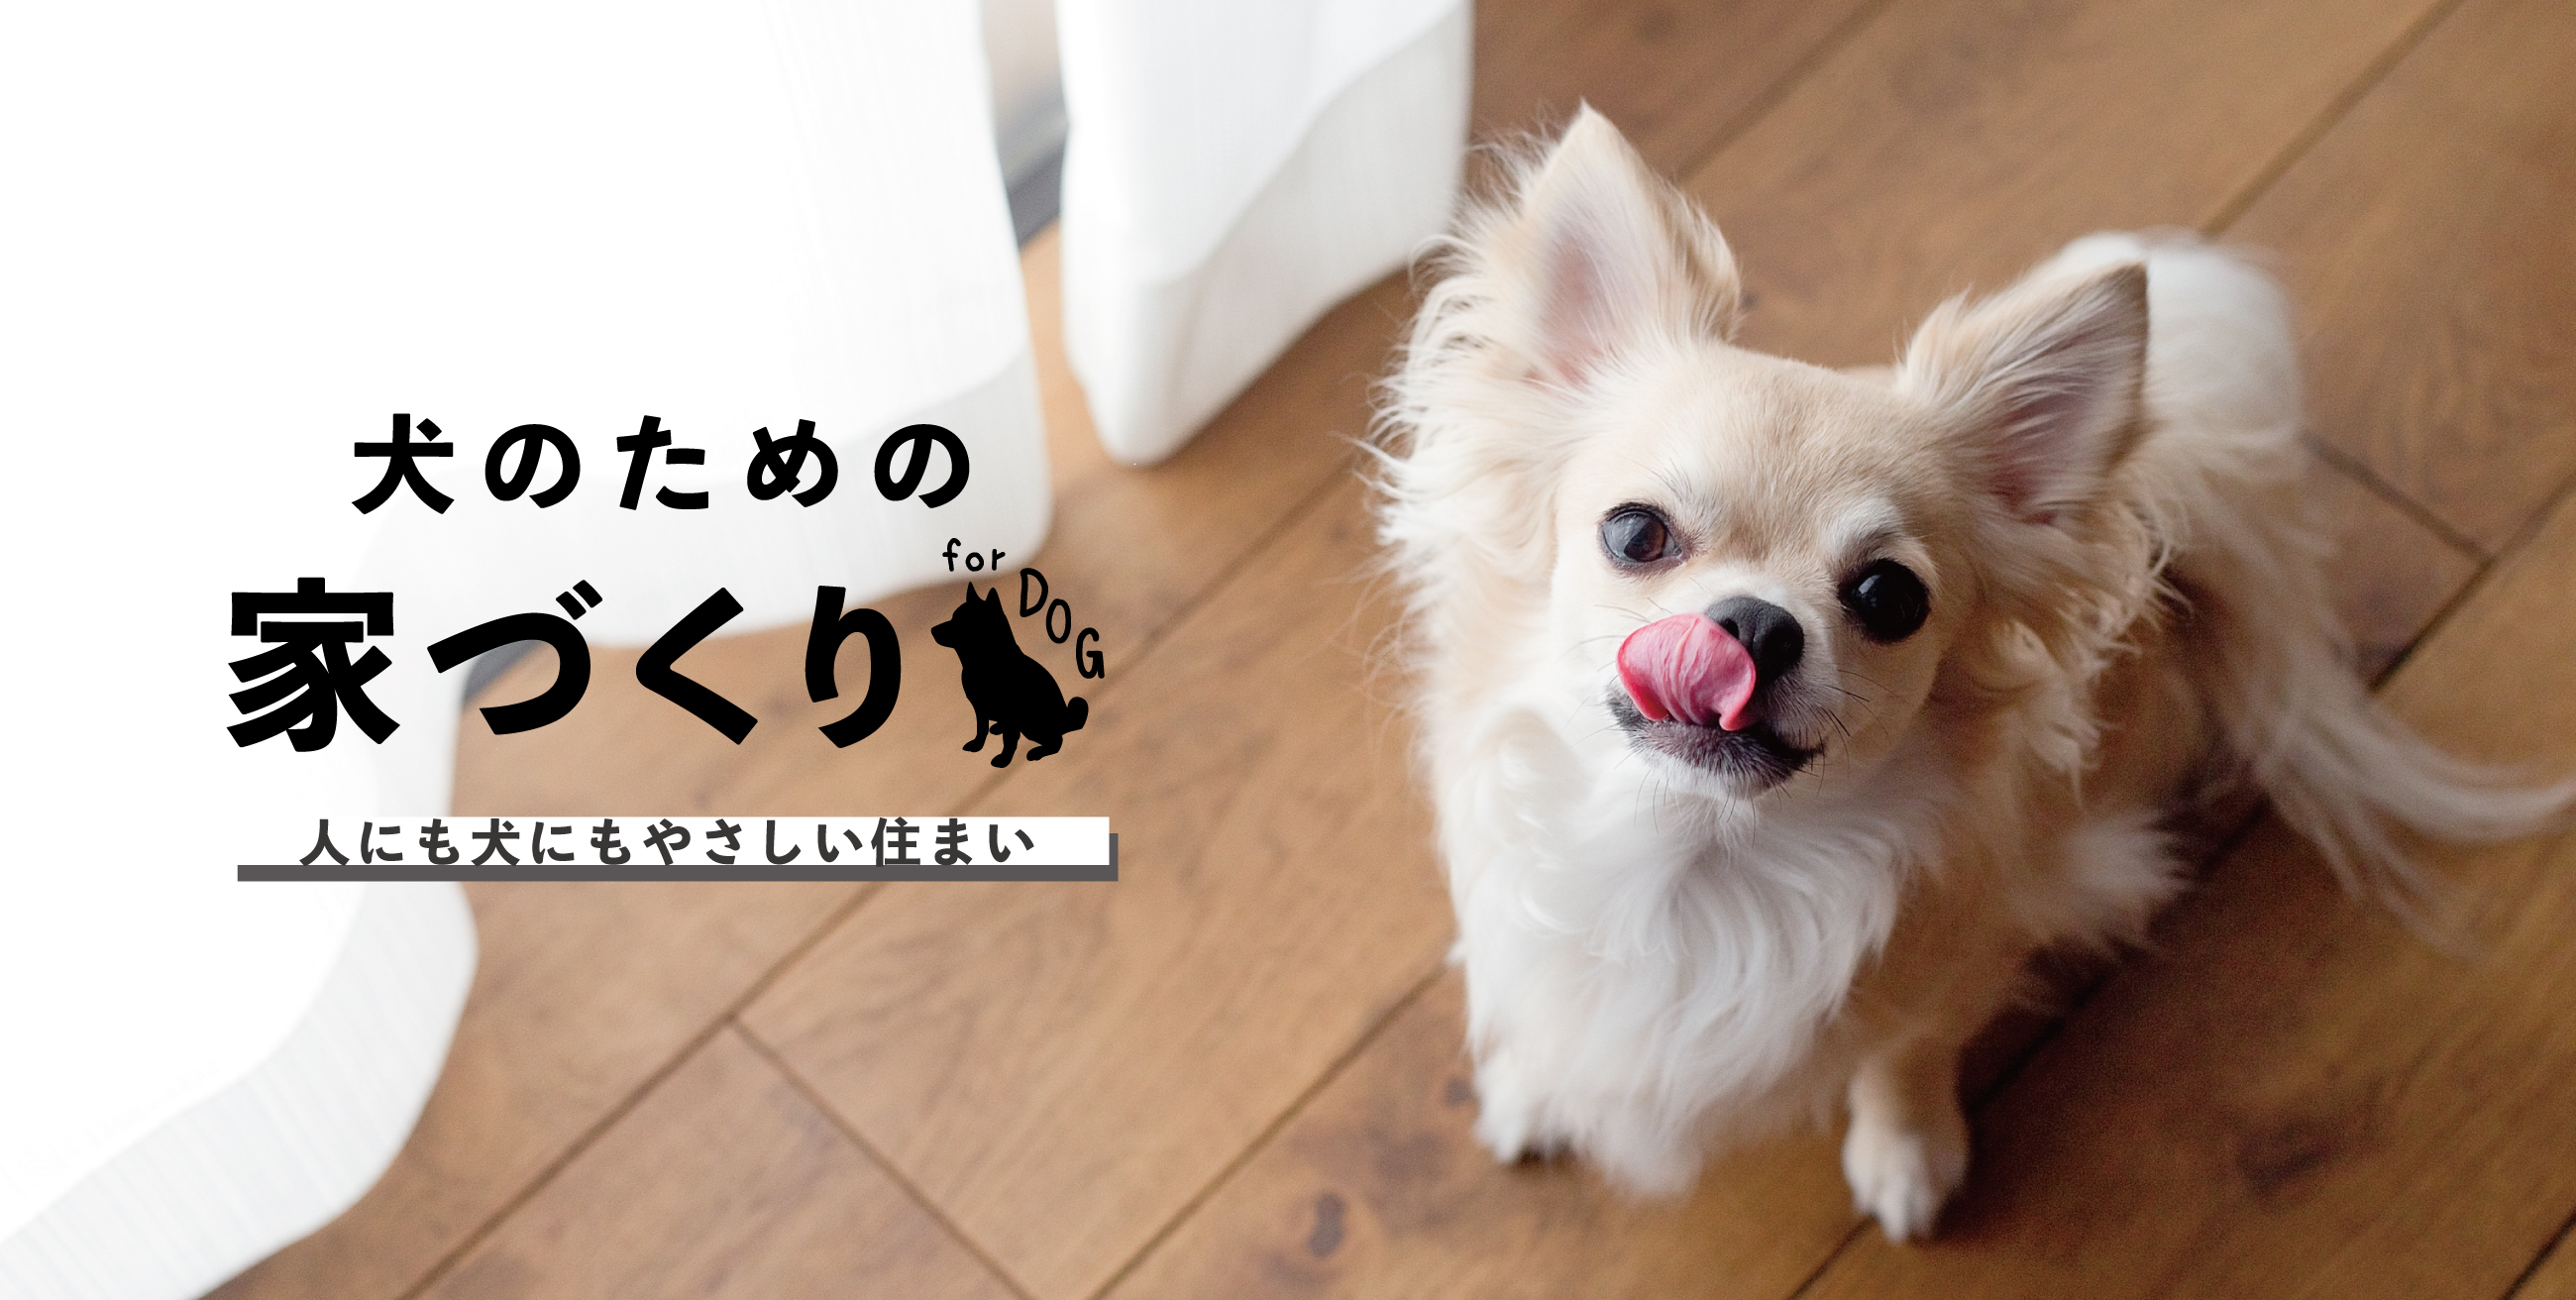 犬のための家づくり 人にも犬にもやさしい住まい マンションリフォームのサンリフォーム 大阪 神戸 西宮 吹田 京都 横浜 東京